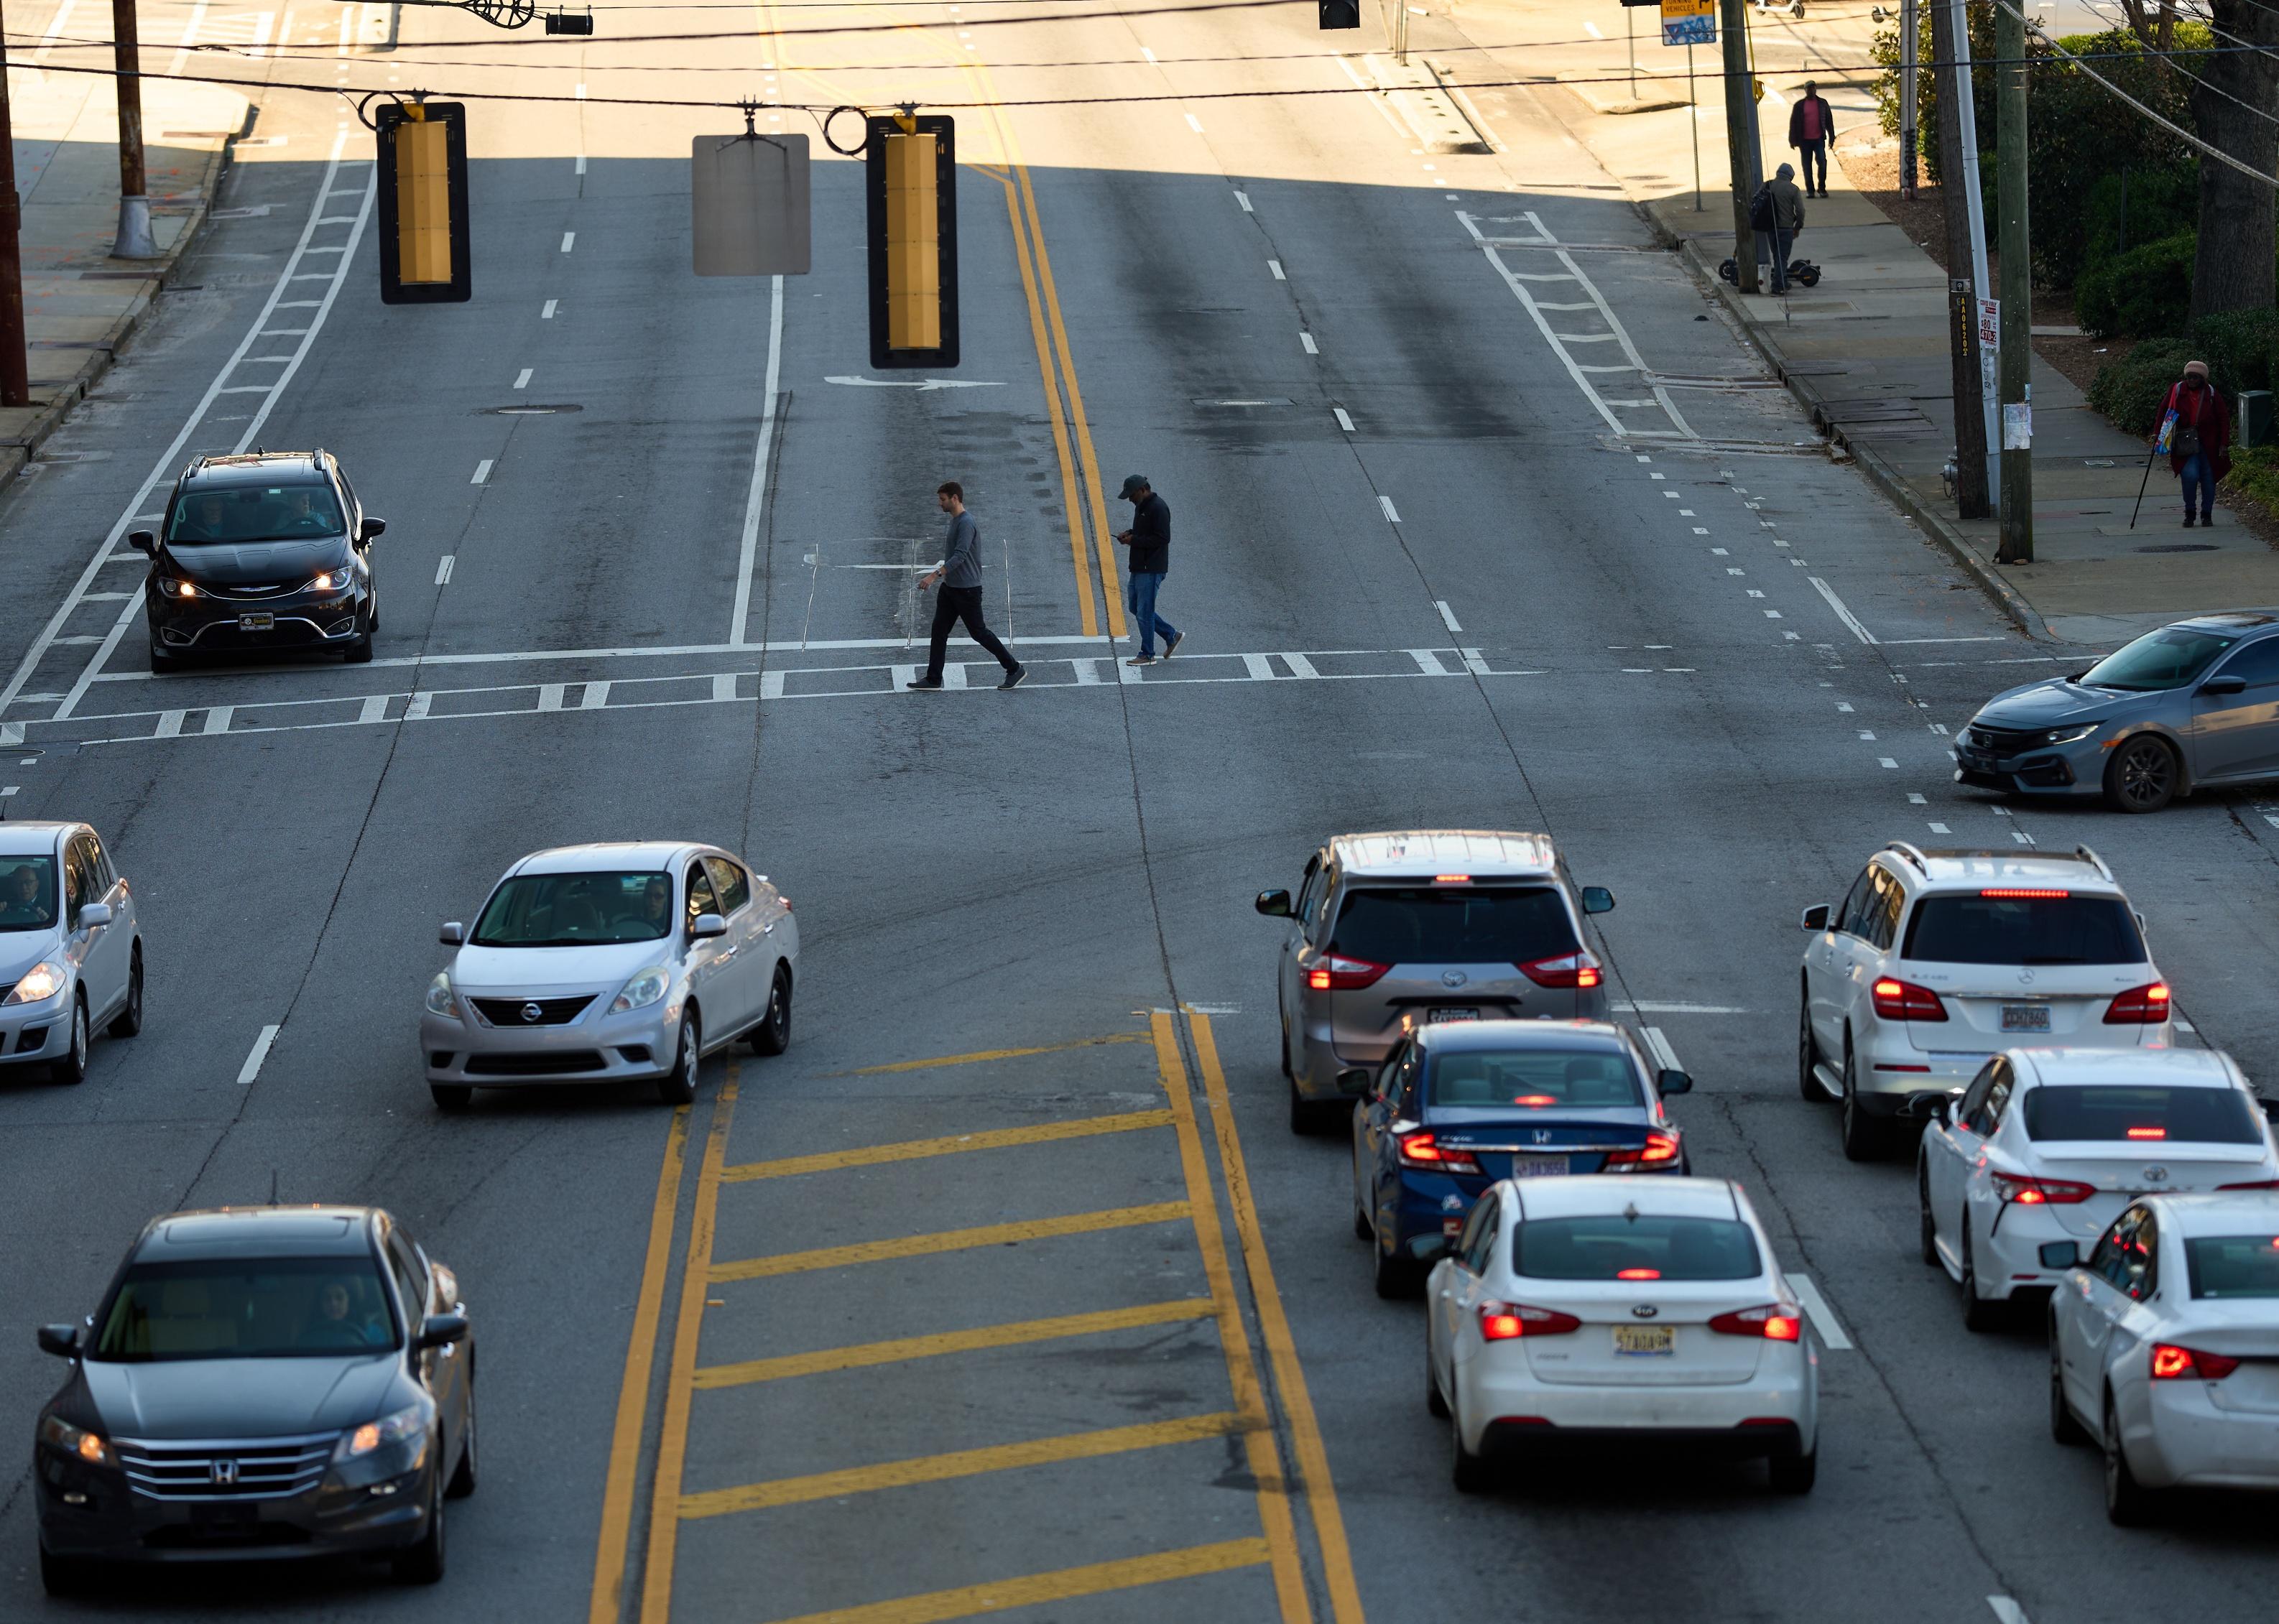 Atlanta traffic and crosswalk